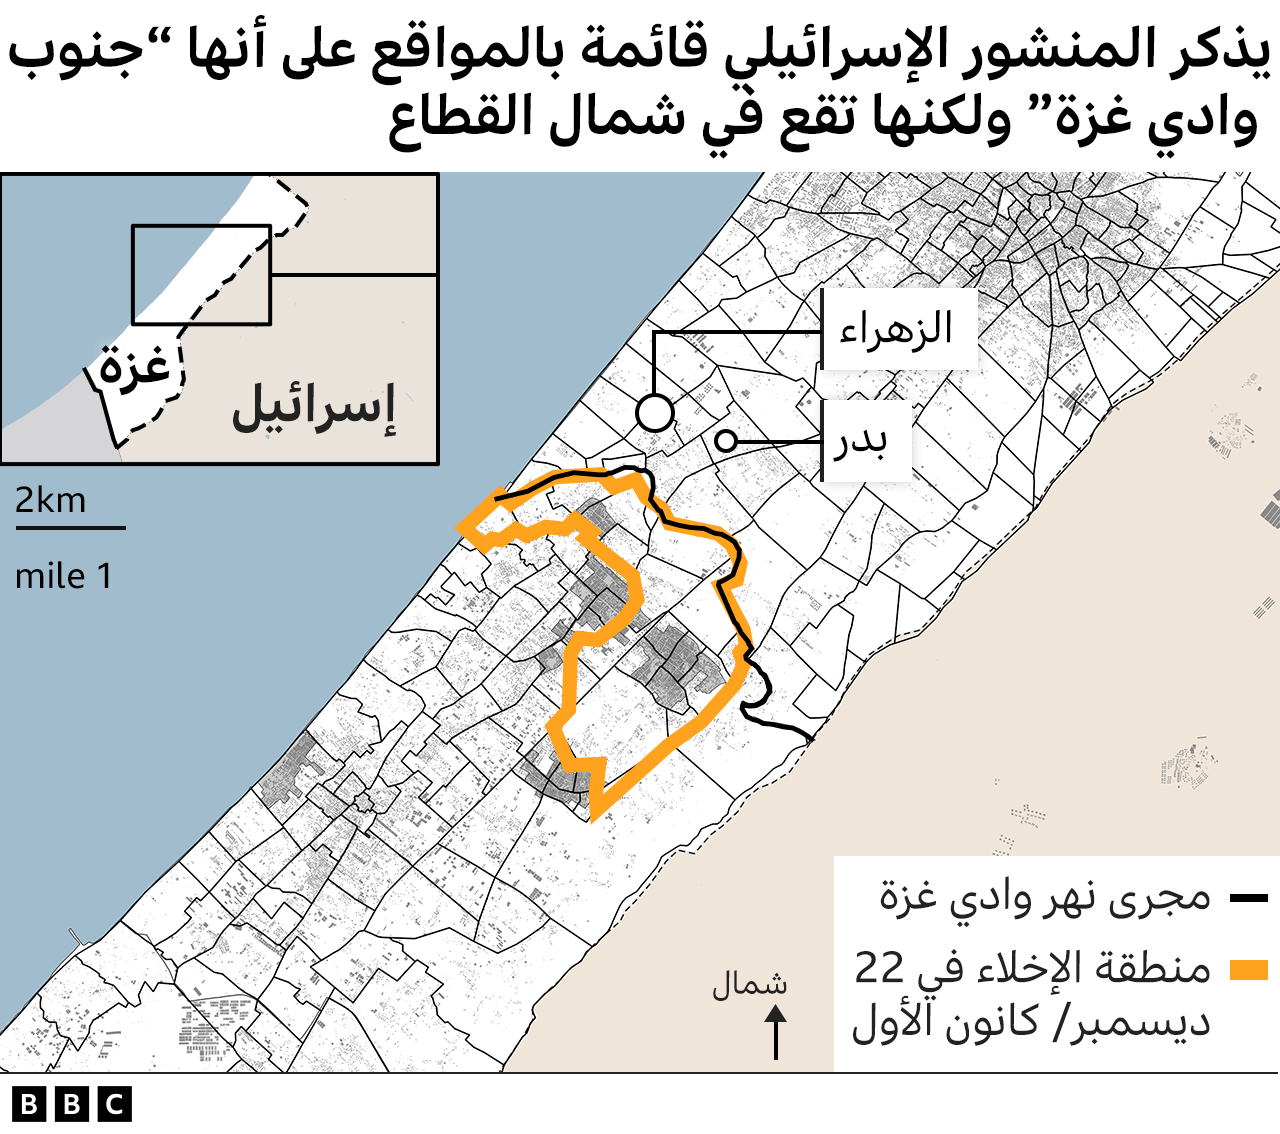 خريطة - يذكر المنشور الإسرائيلي قائمة بالمواقع على أنها تقع جنوب وادي غزة لكنها في الحقيقة تقع في شمال القطاع